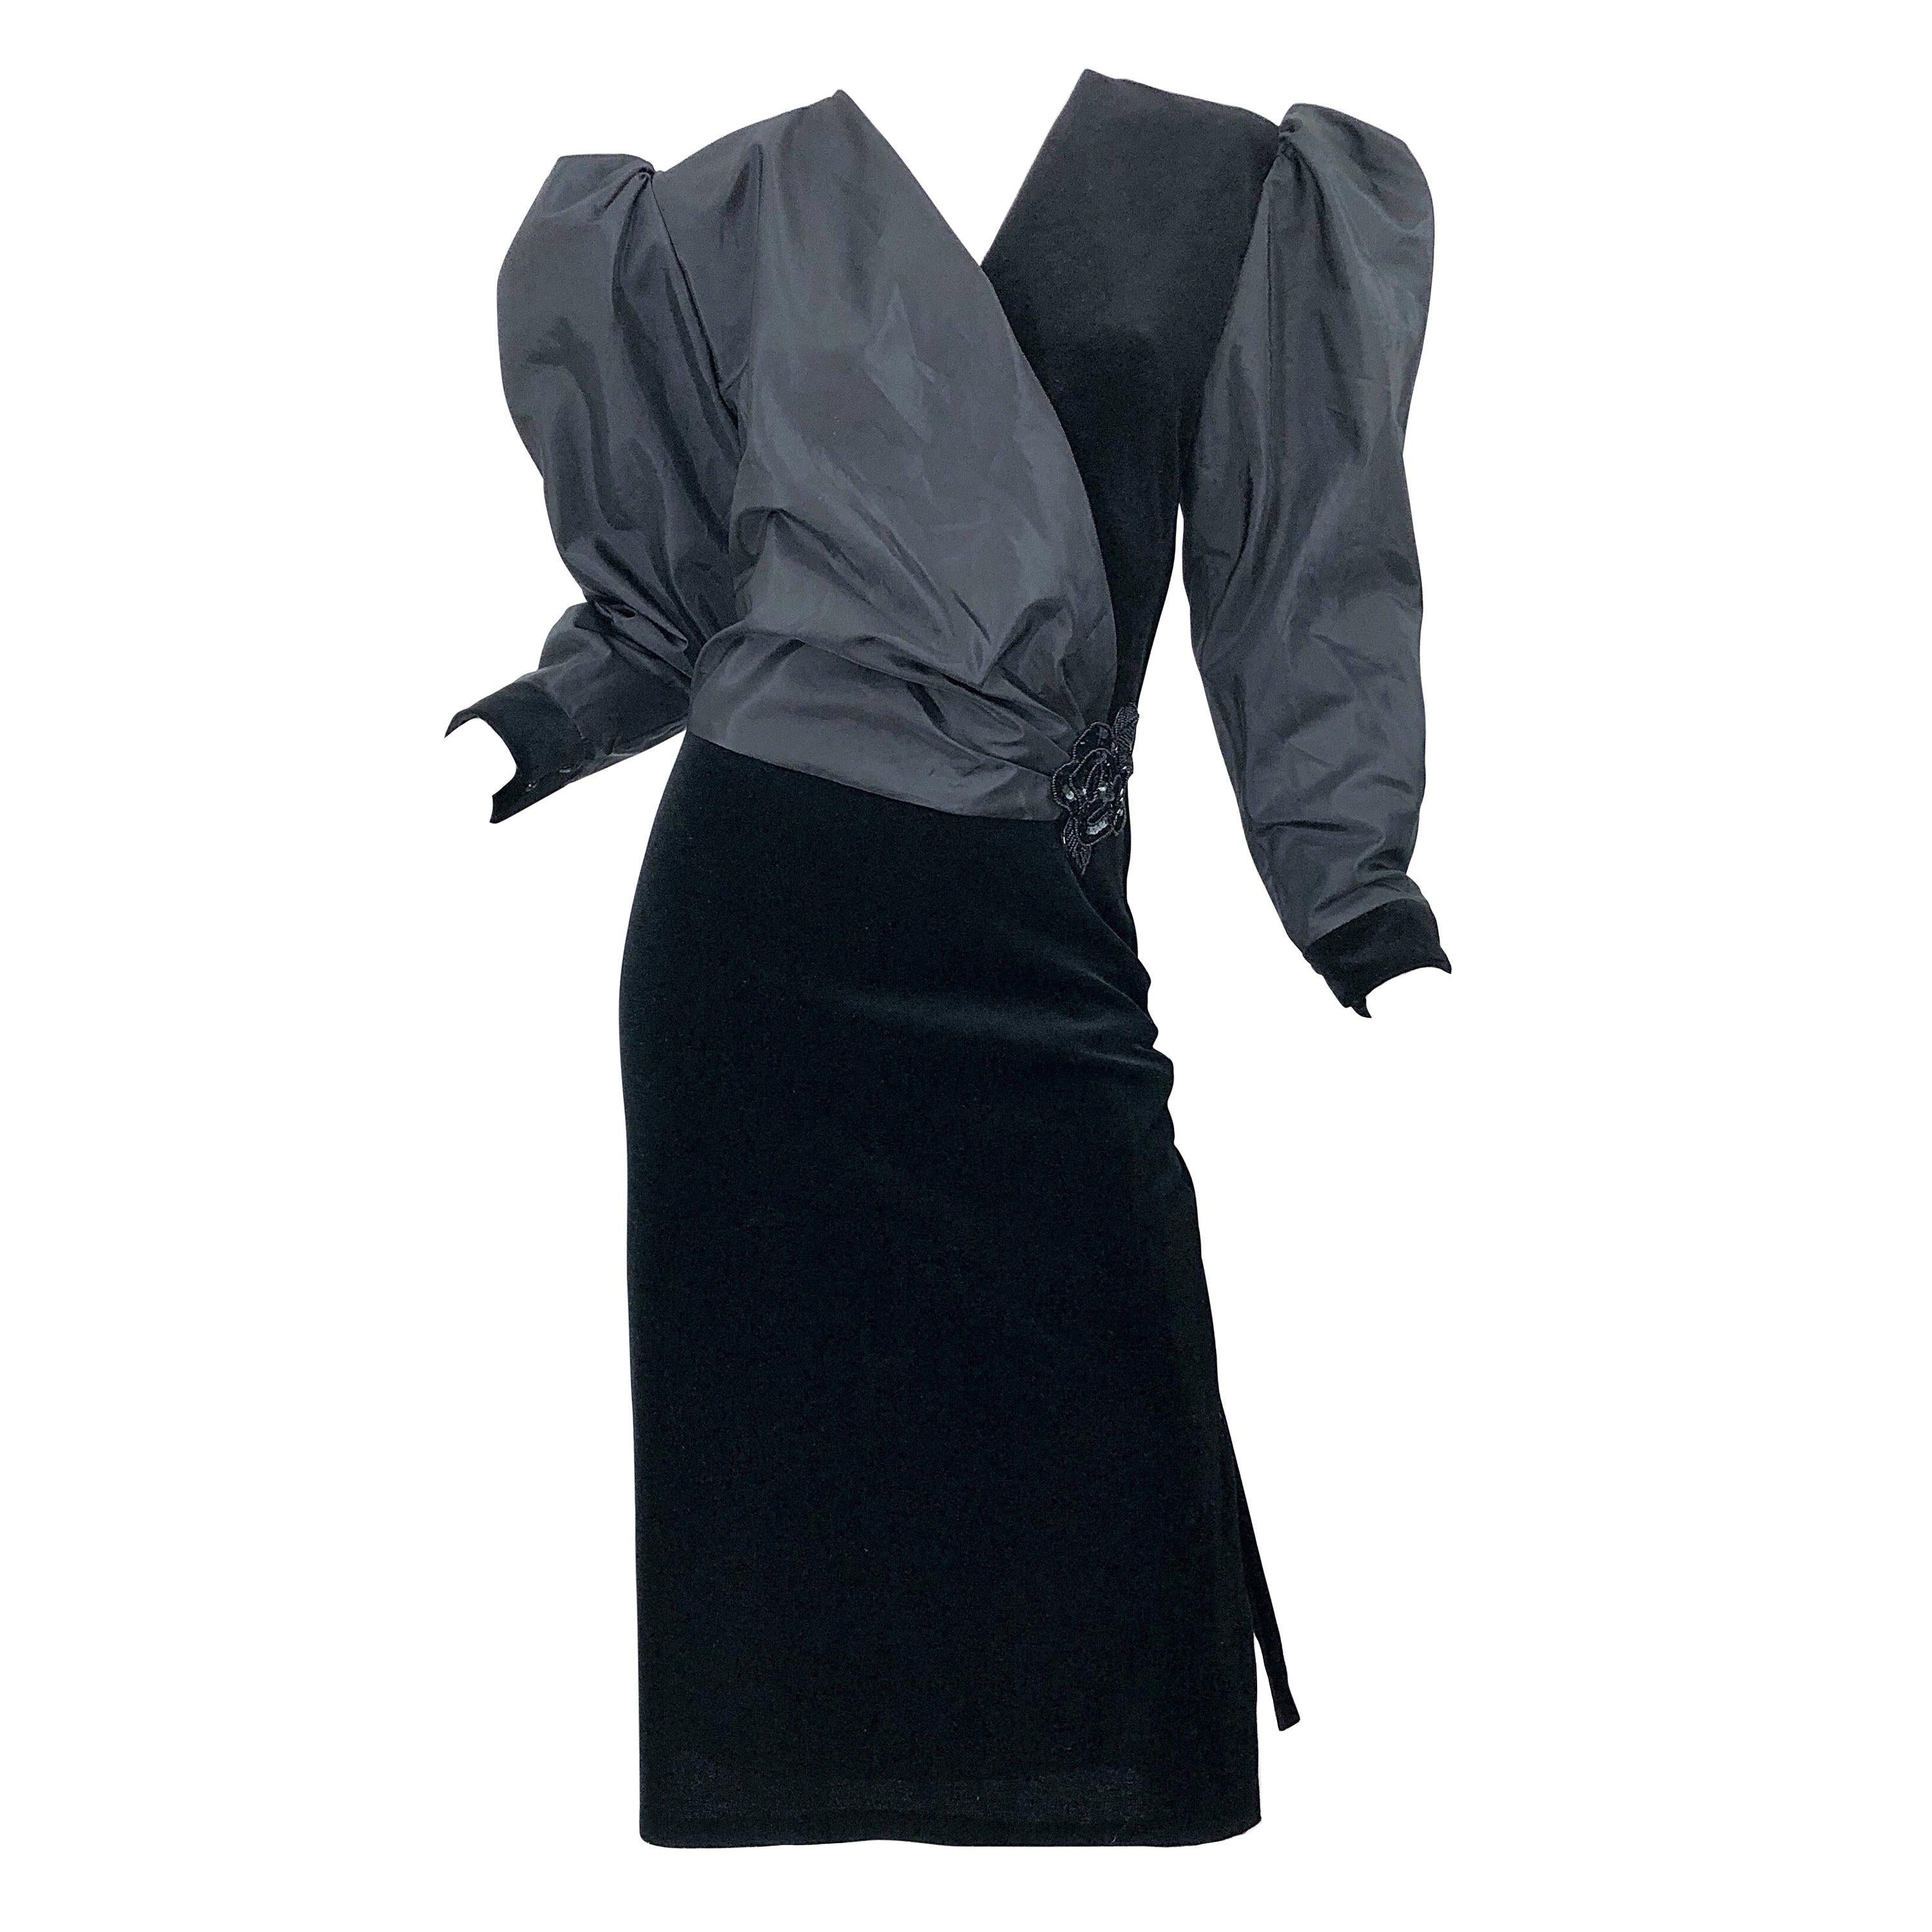 Frank Usher Designer Frank Usher Vintage Lace Tulle Beige Blush Wedding Dress & Jacket Fit 8 